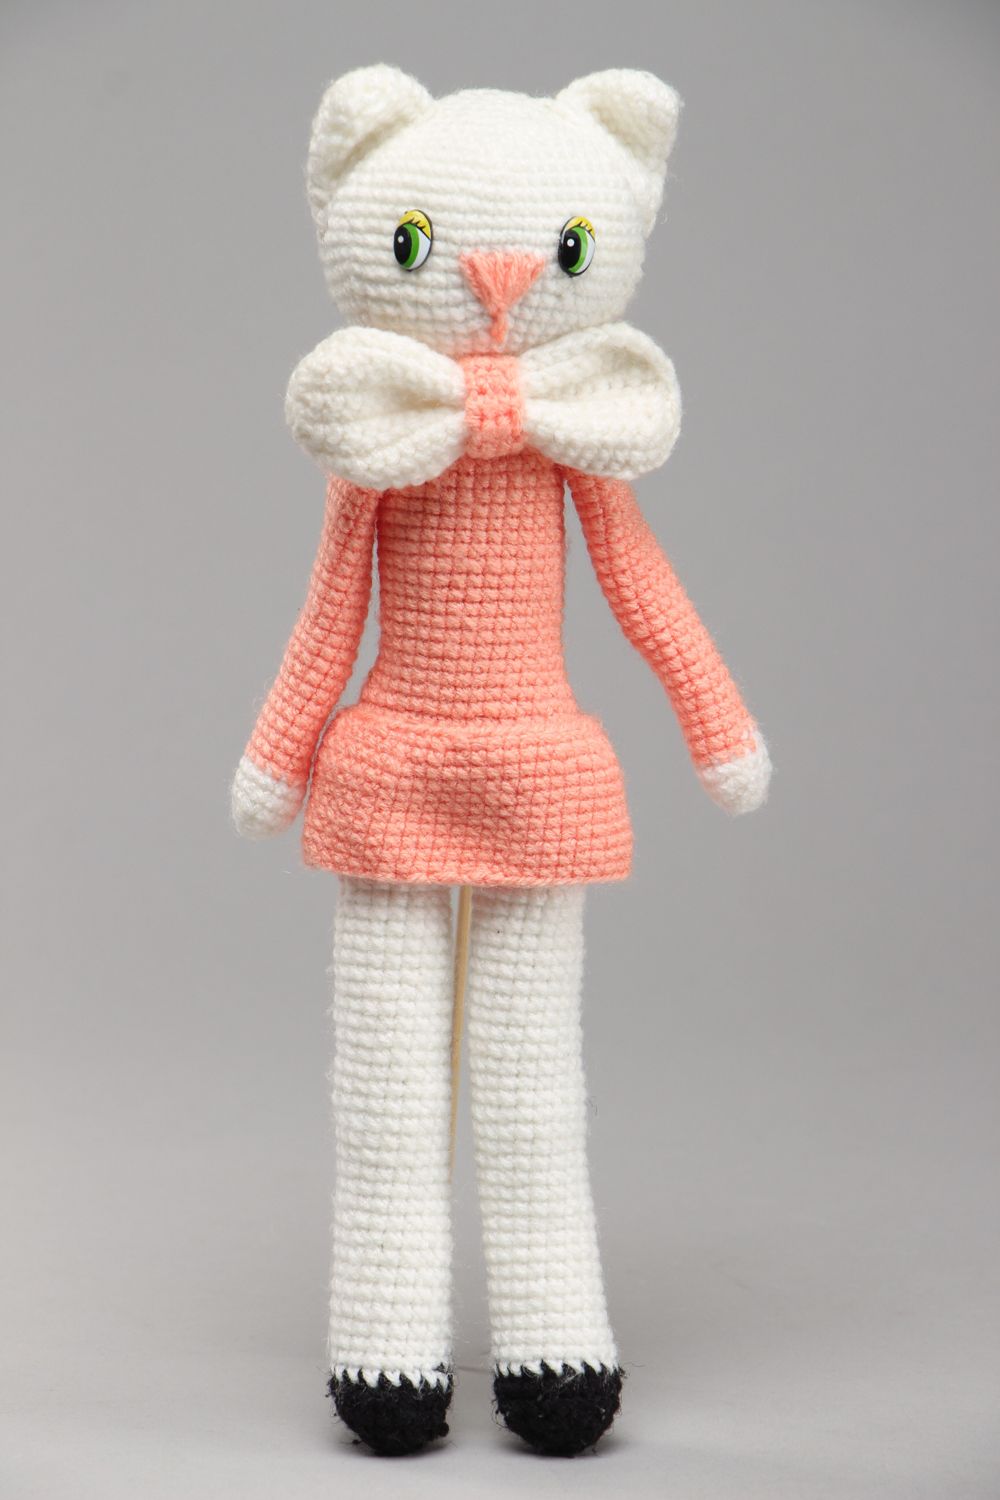 Jouet mou tricoté au crochet fait main Chat amigurumi photo 1